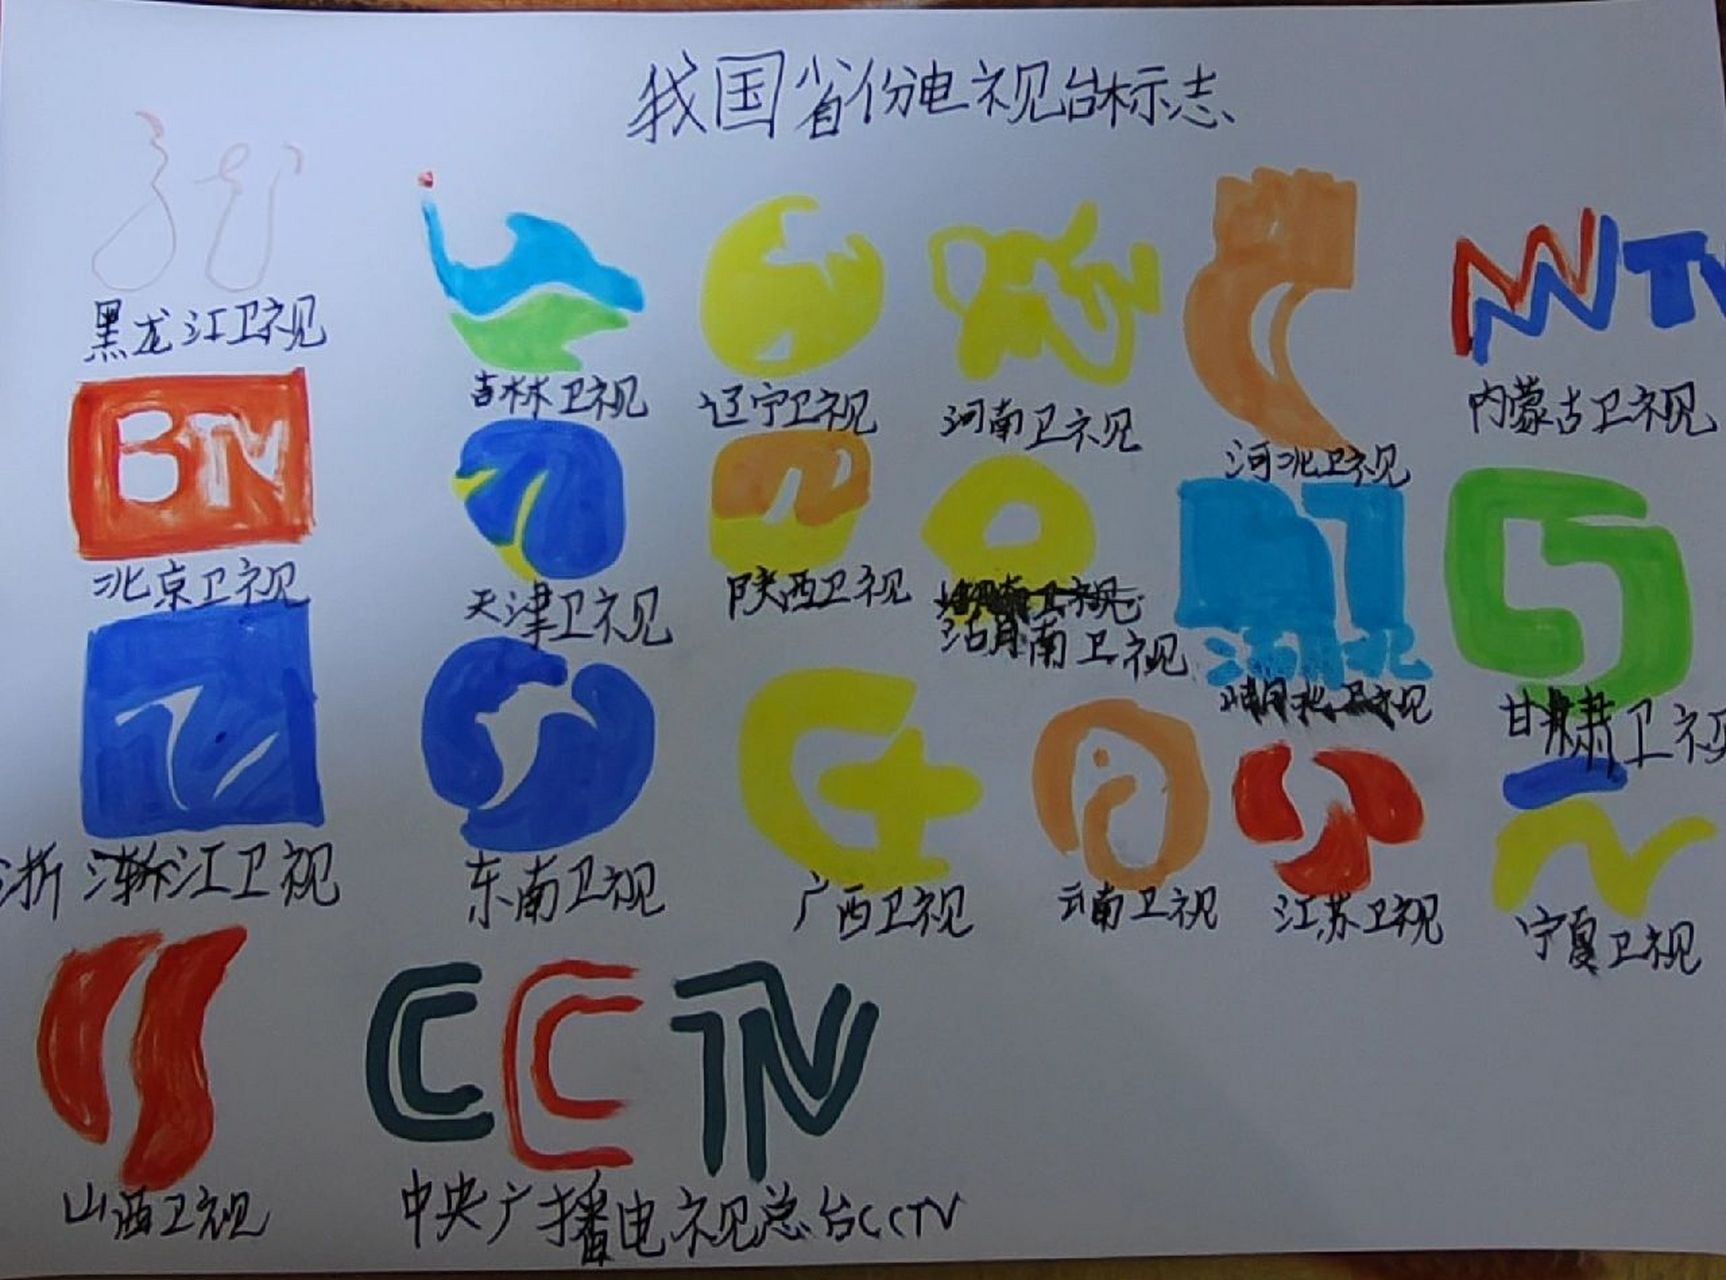 各大省份电视台标志 图1:是原图,因为红色笔没水